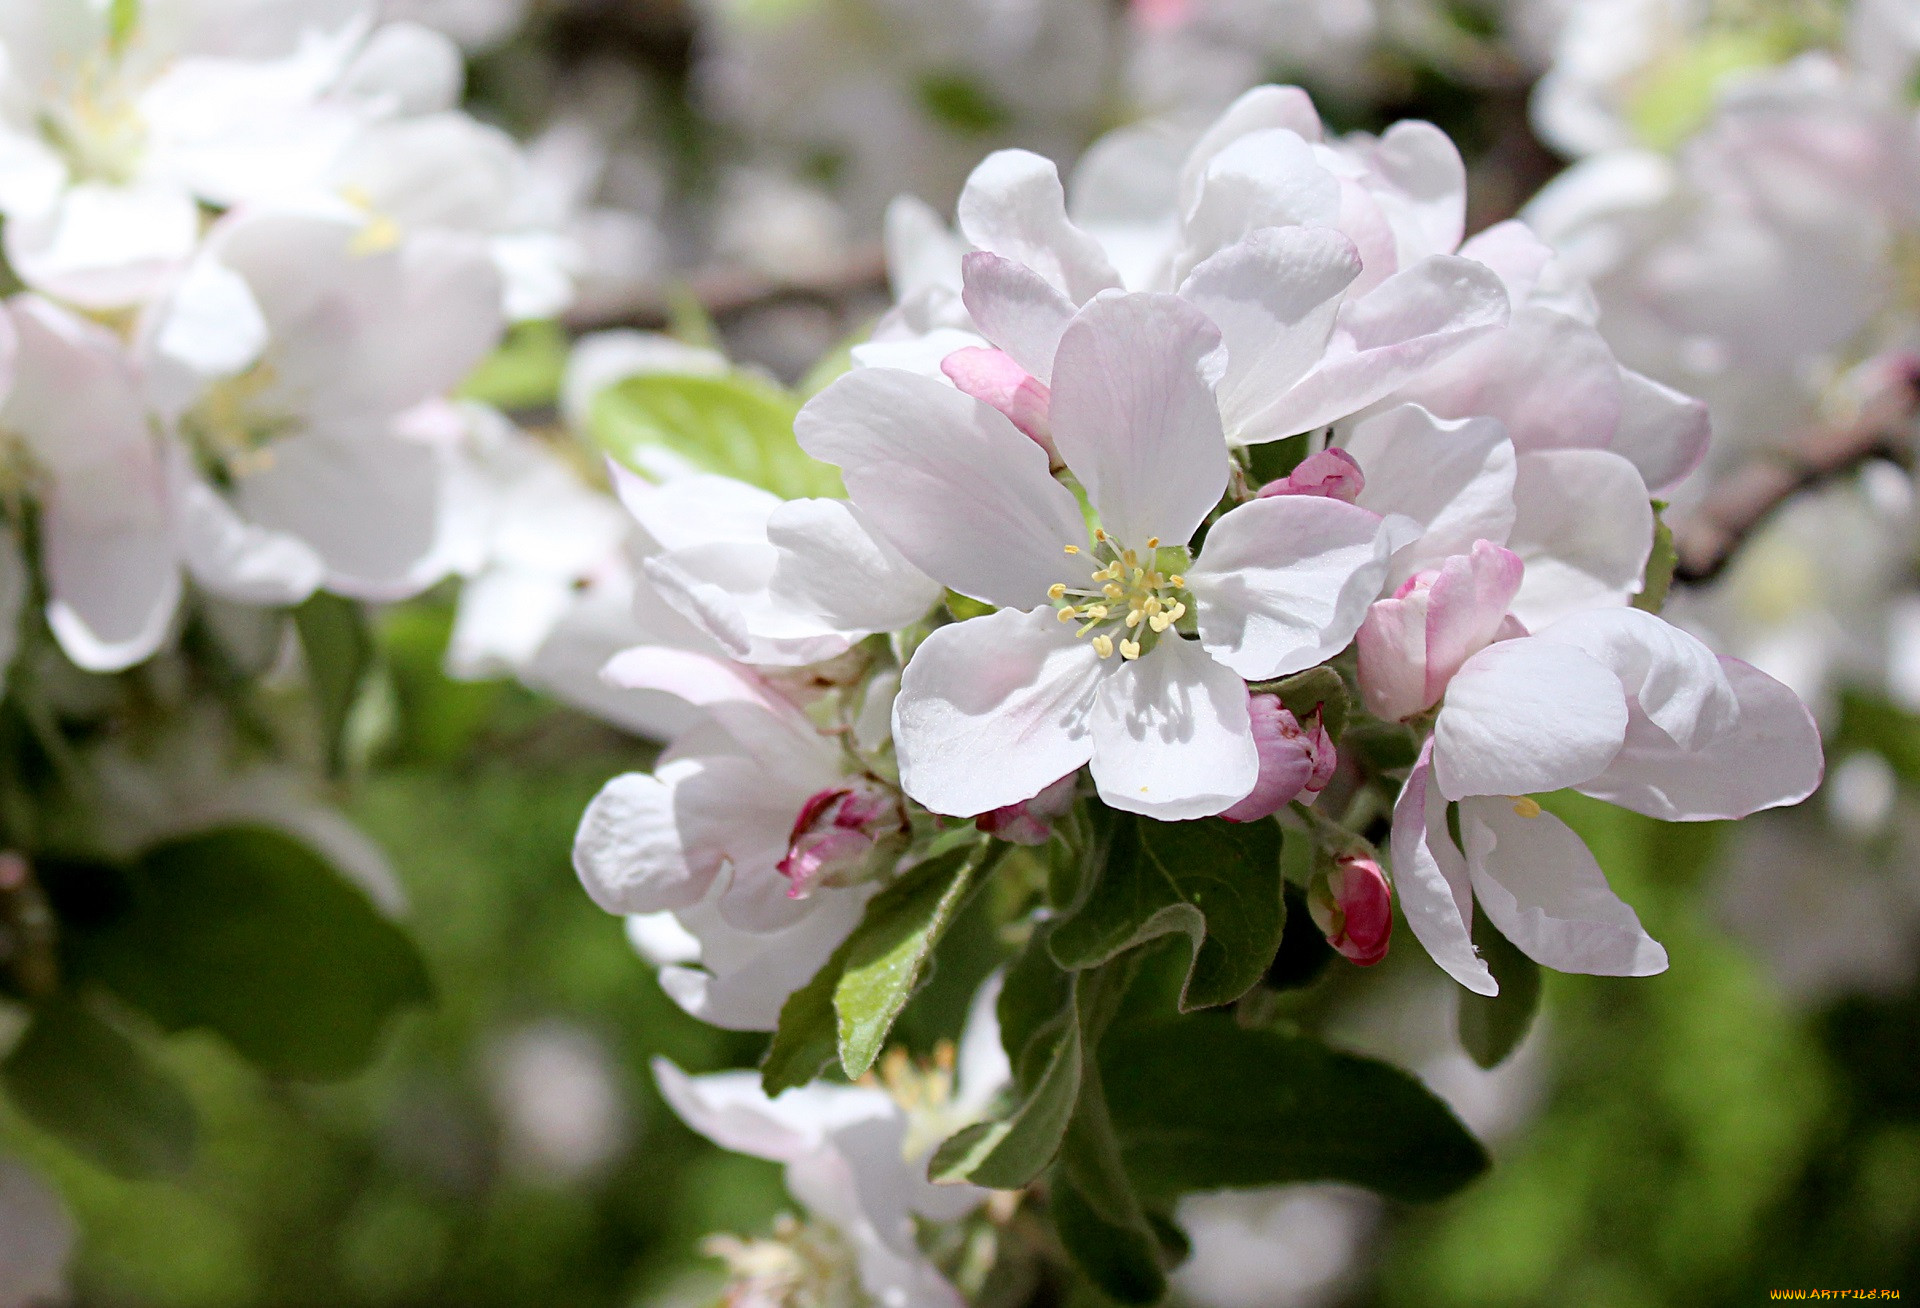 Любовь расцветающая цветами груши 37. Яблоня цветет фото. Яблоня цветет пряник. Яблоня в цвету Label. Яблони в цвету картинки 1800.